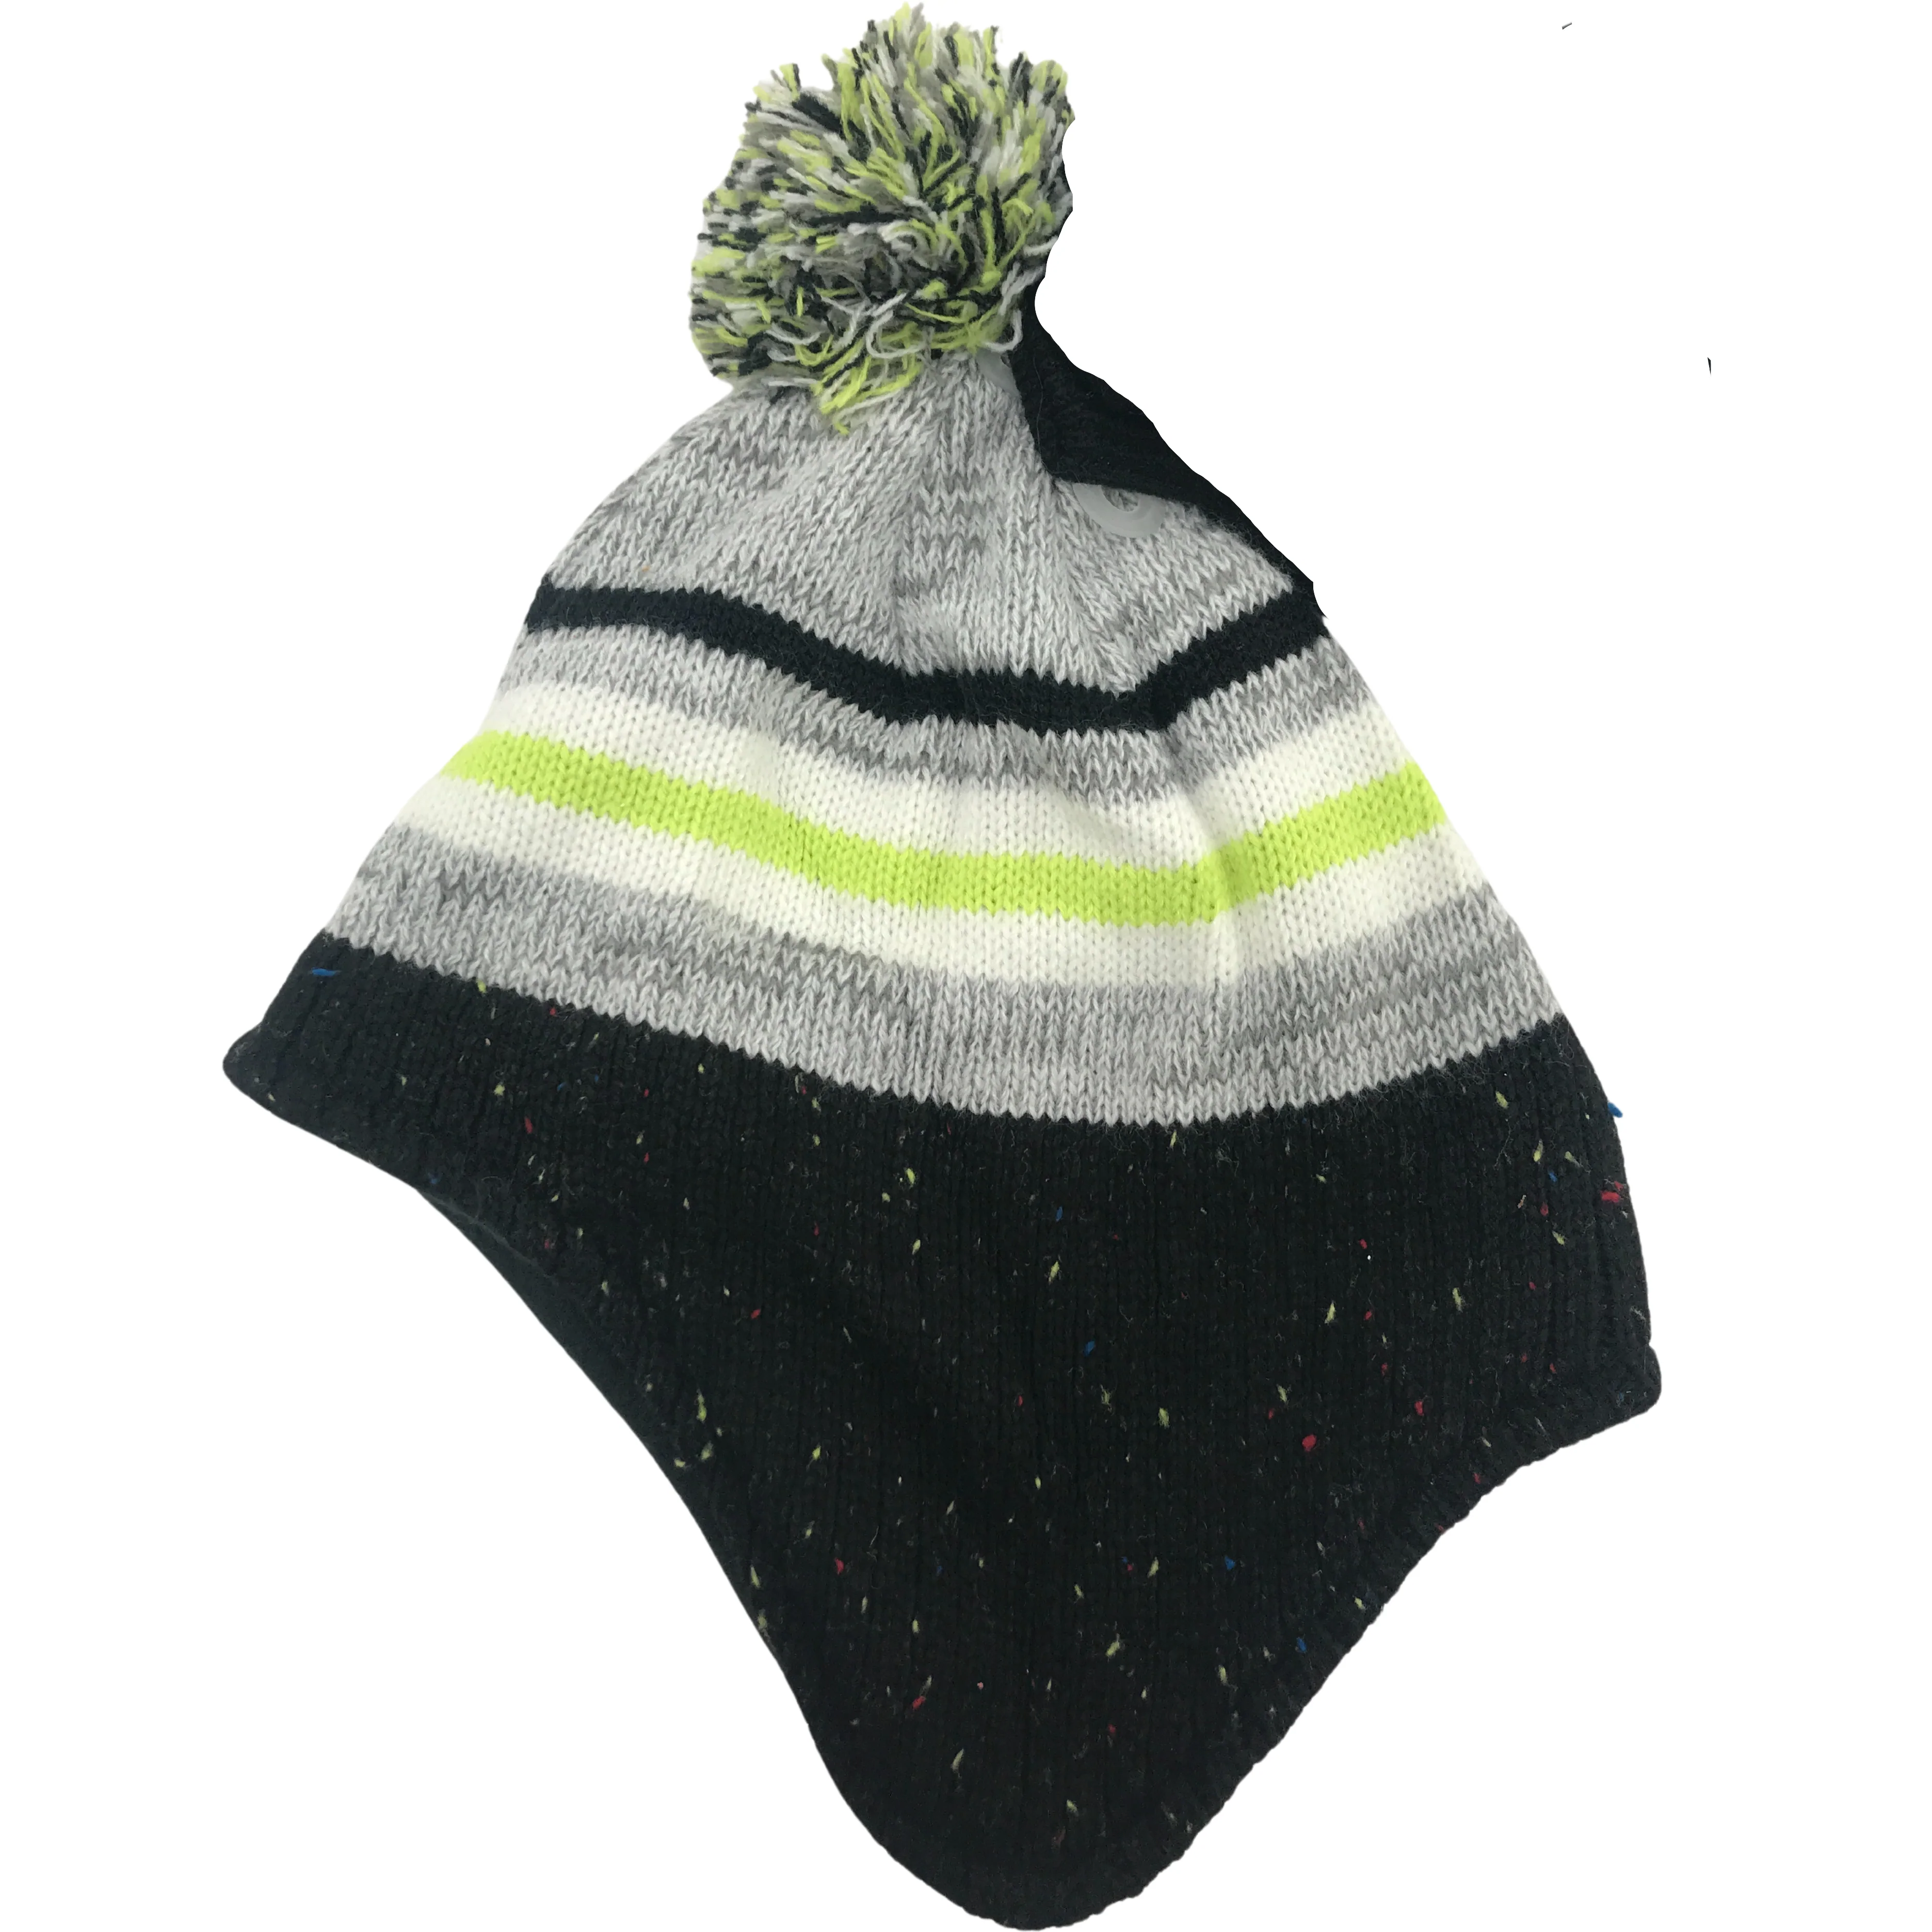 Children's Winter Hat & Glove Set / Boy's Toque / White, Grey, & Black / Size 8-20